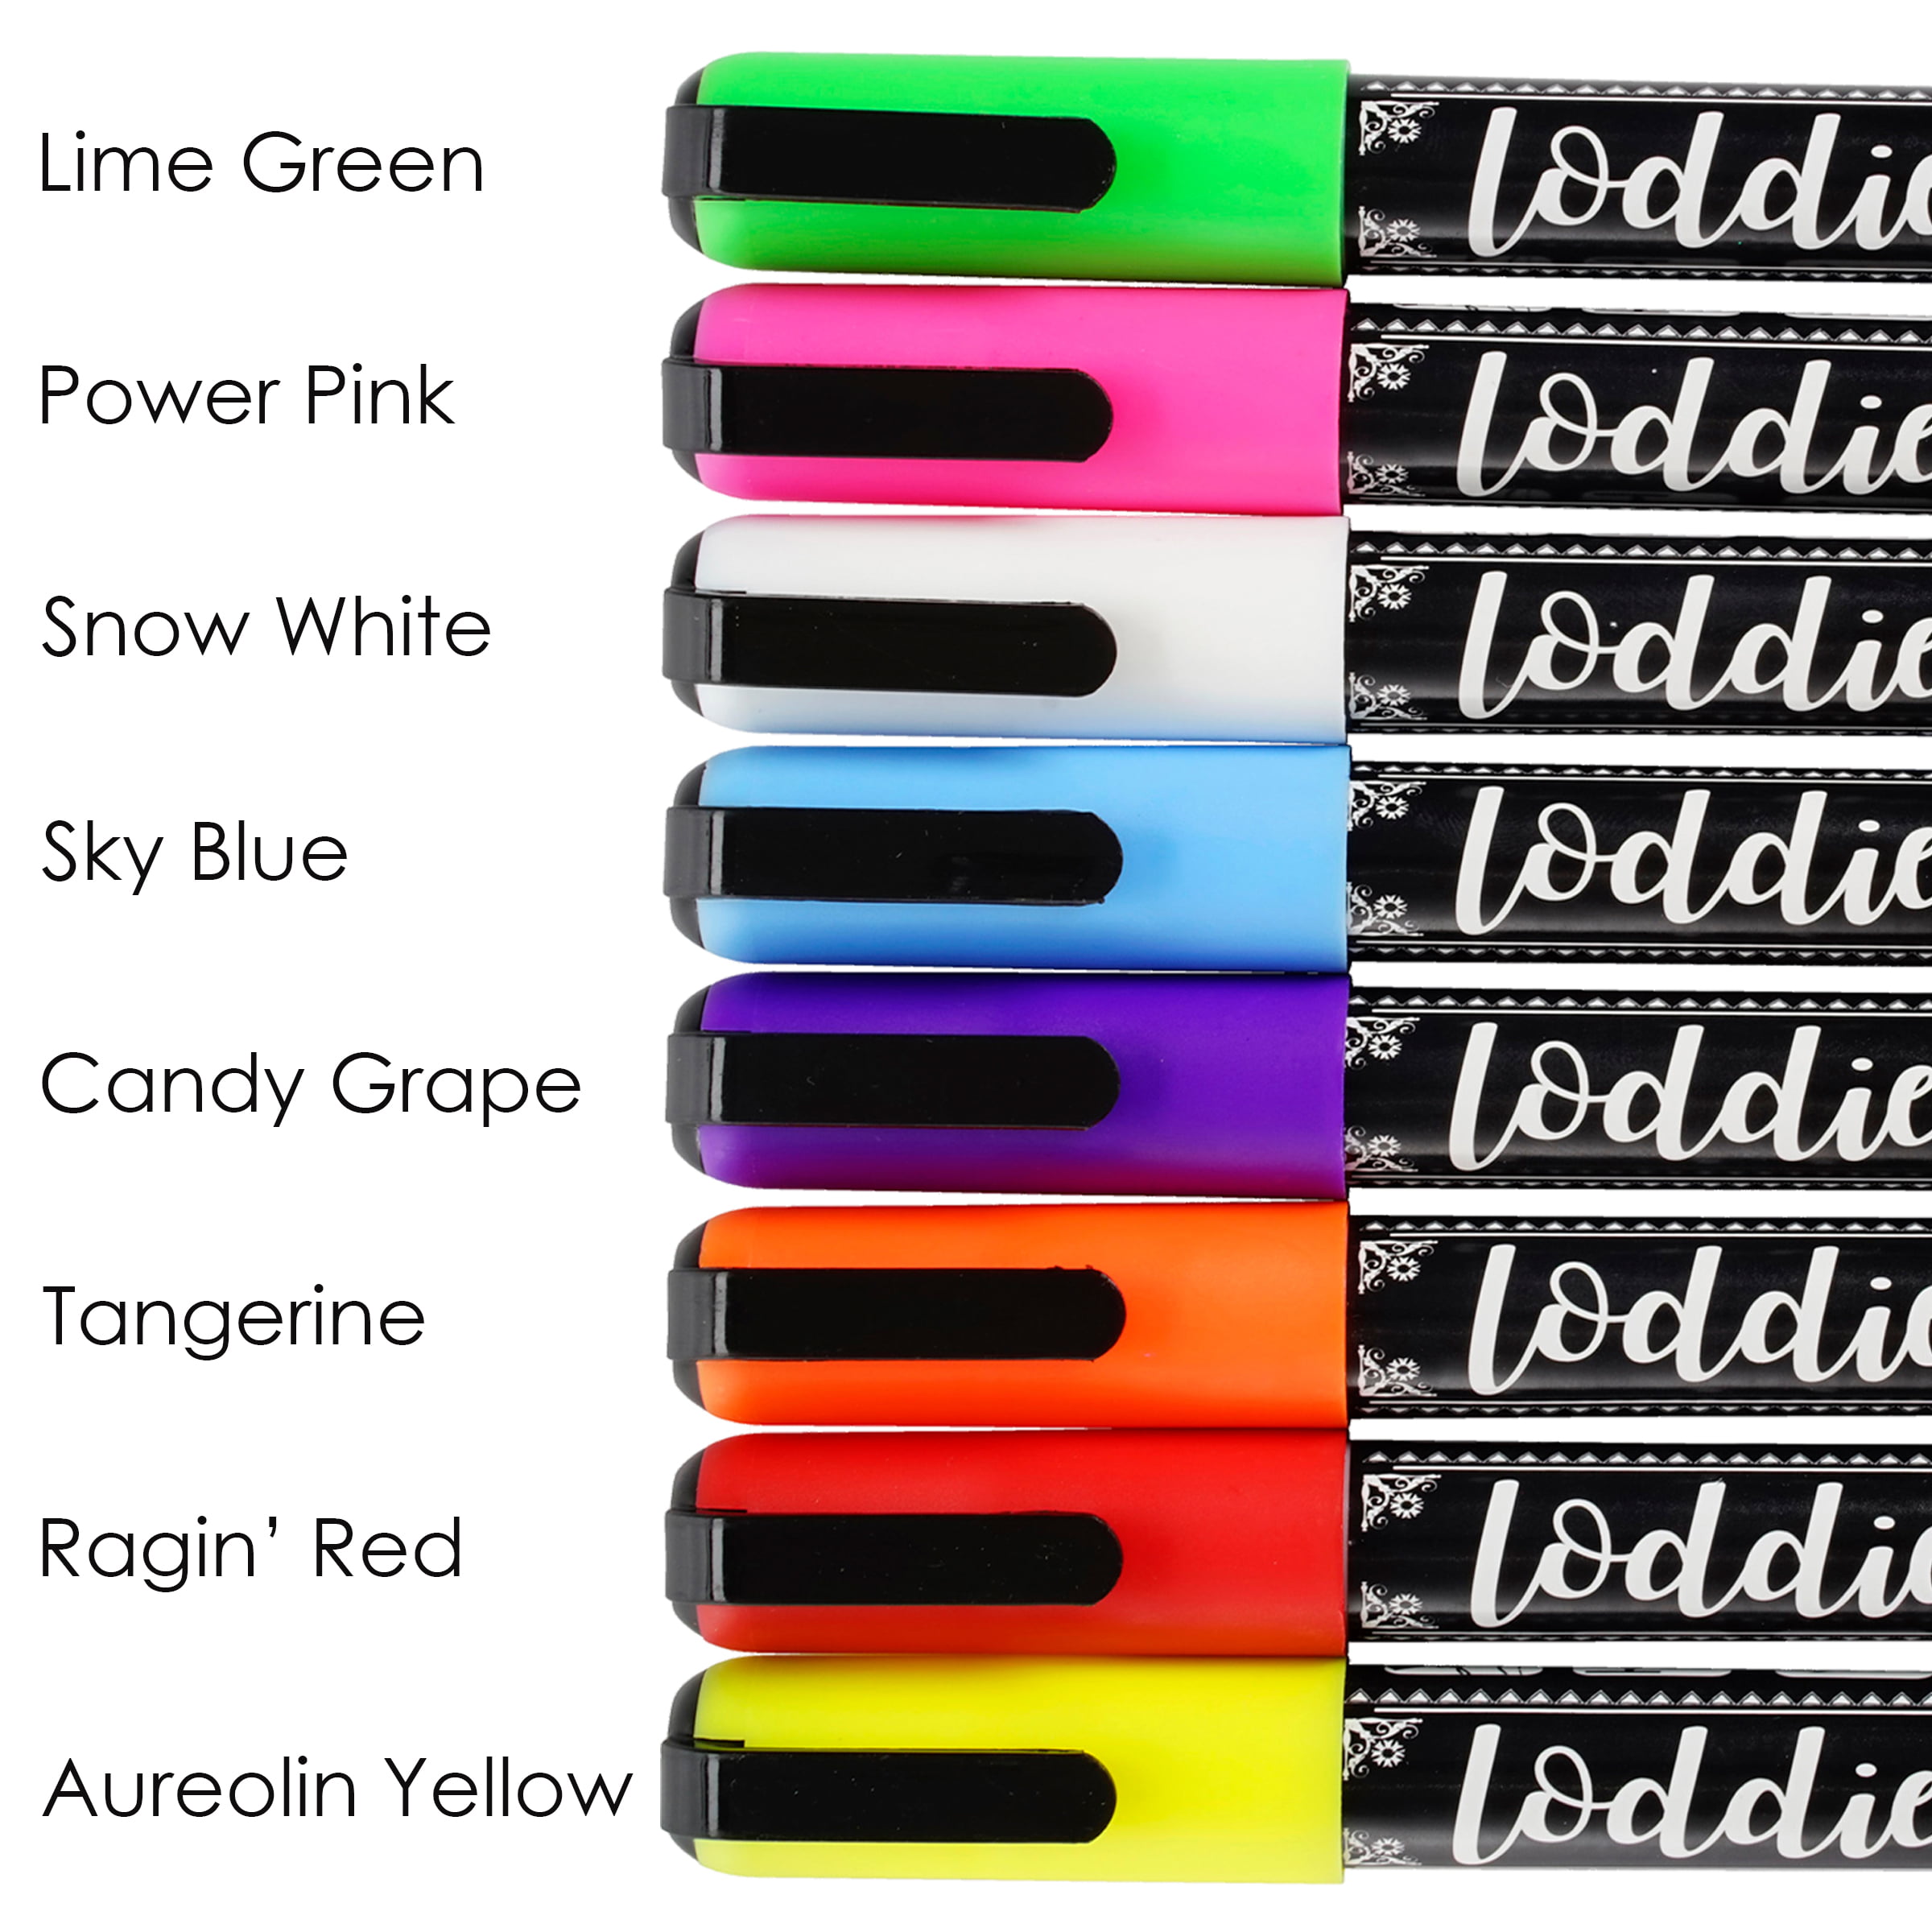 Loddie Doddie Liquid Chalk Markers curated on LTK